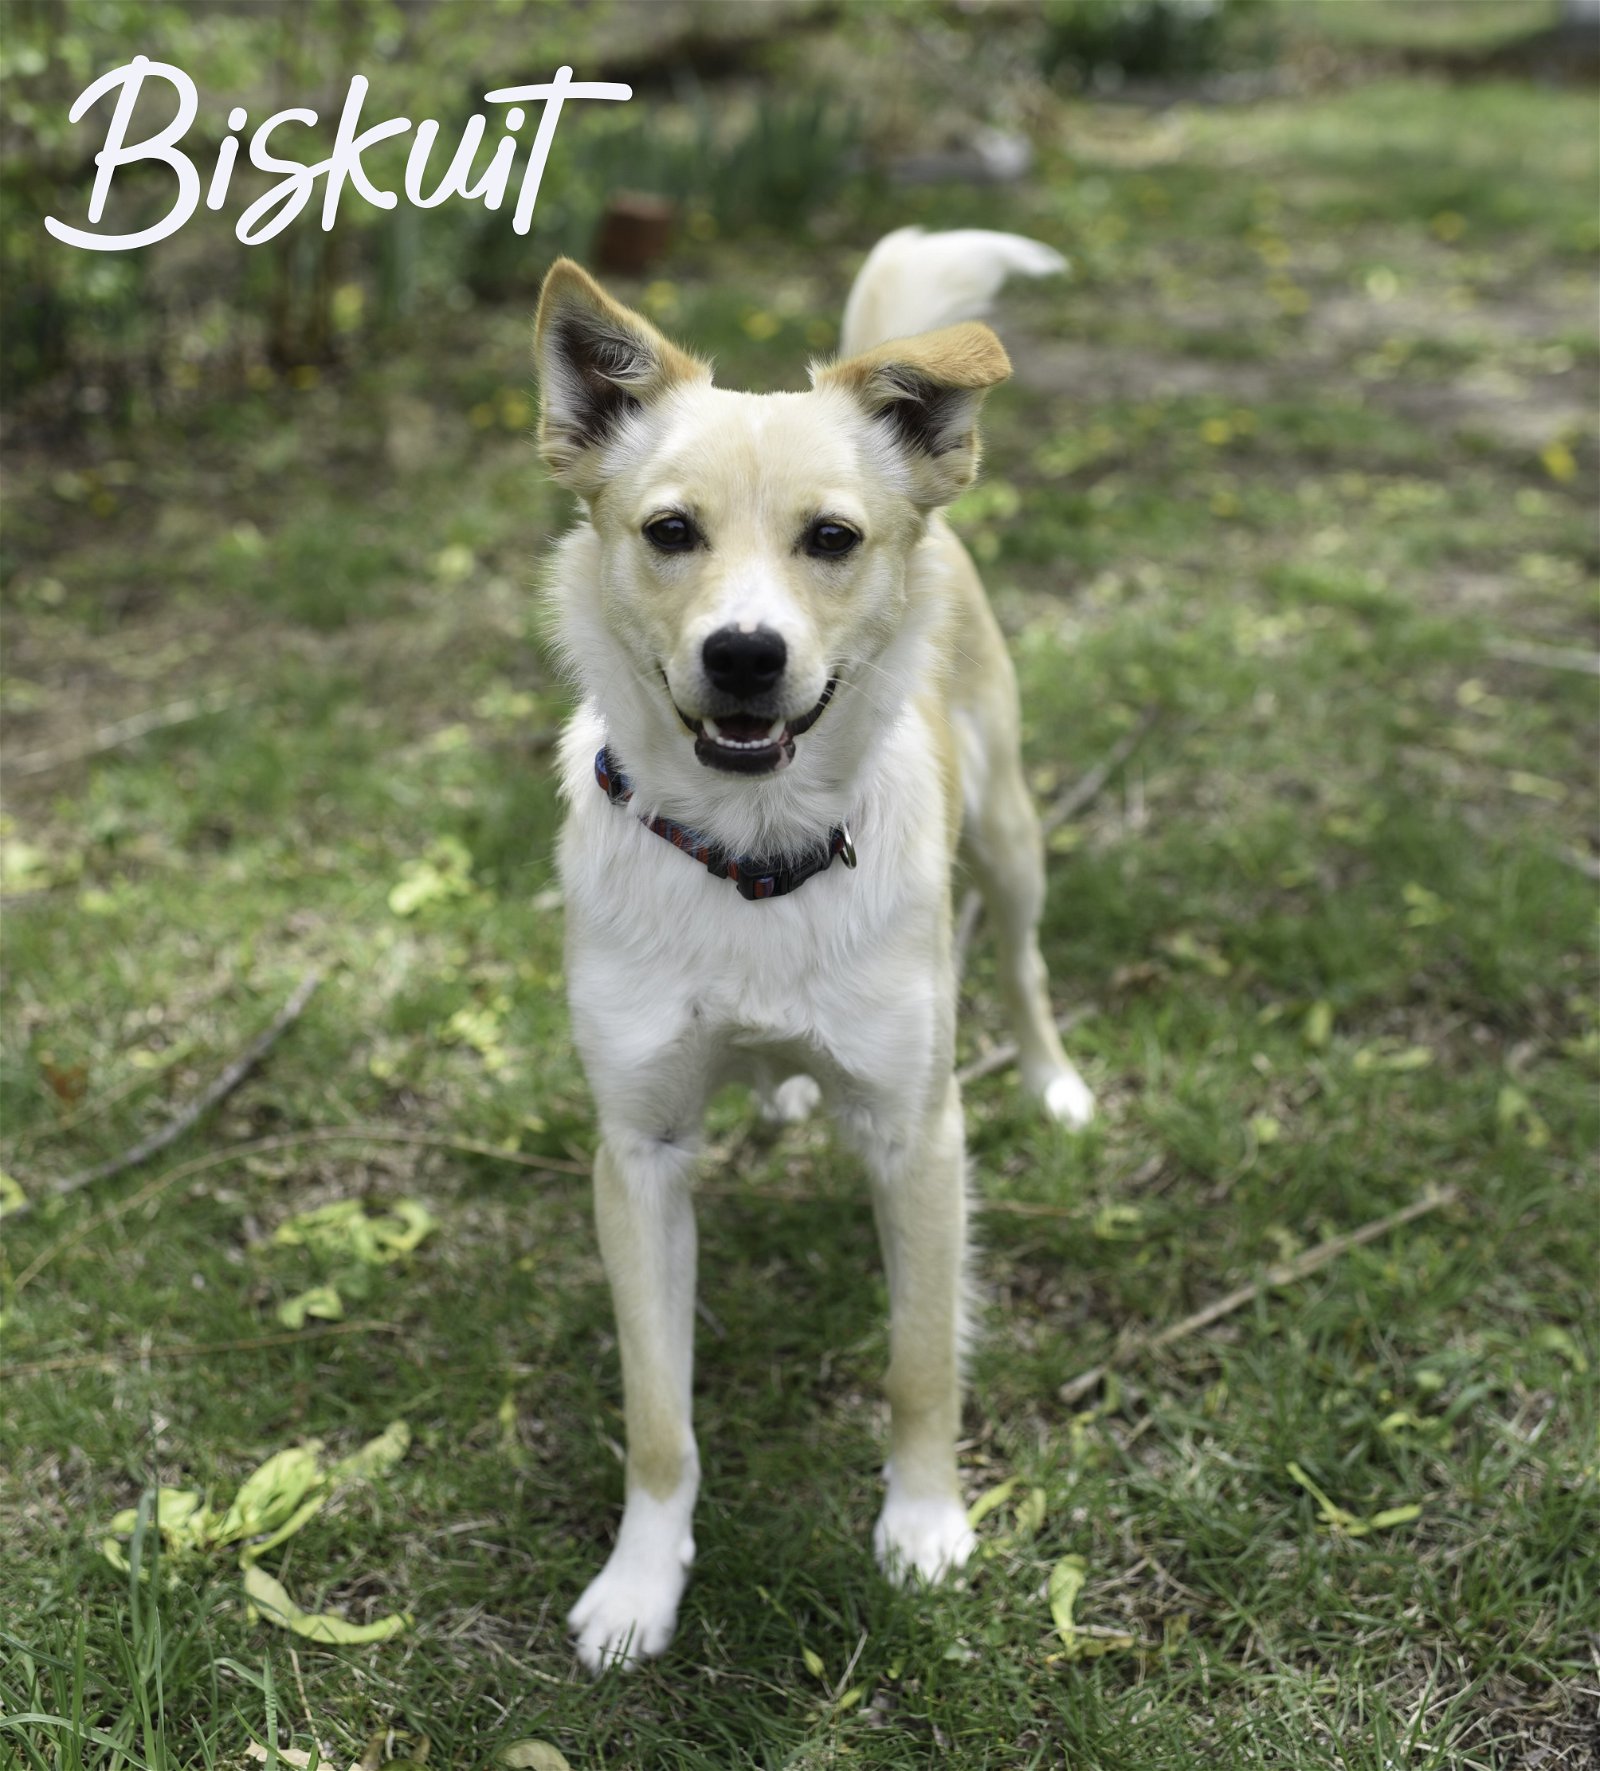 adoptable Dog in Topeka, KS named Biskuit